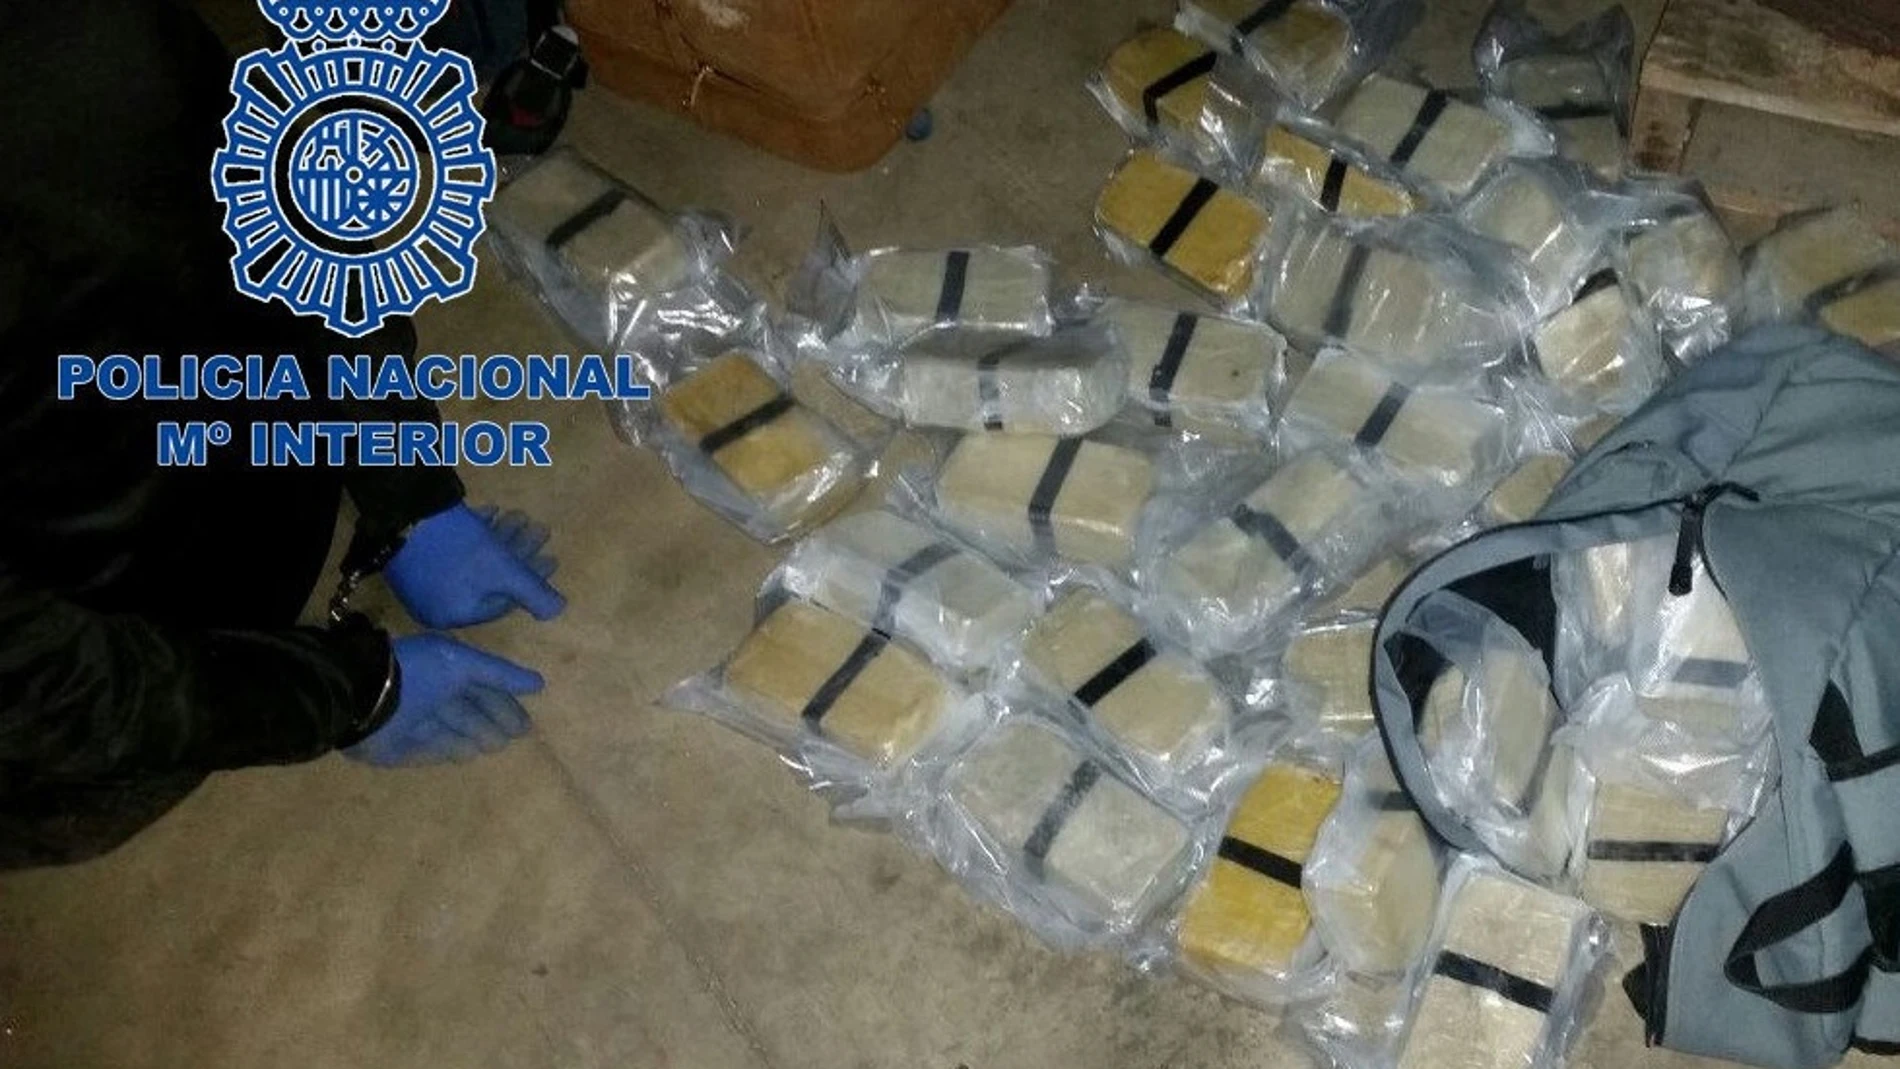 La red desmantelada con 65 kilos de heroína utilizaba vías de distribución gallegas